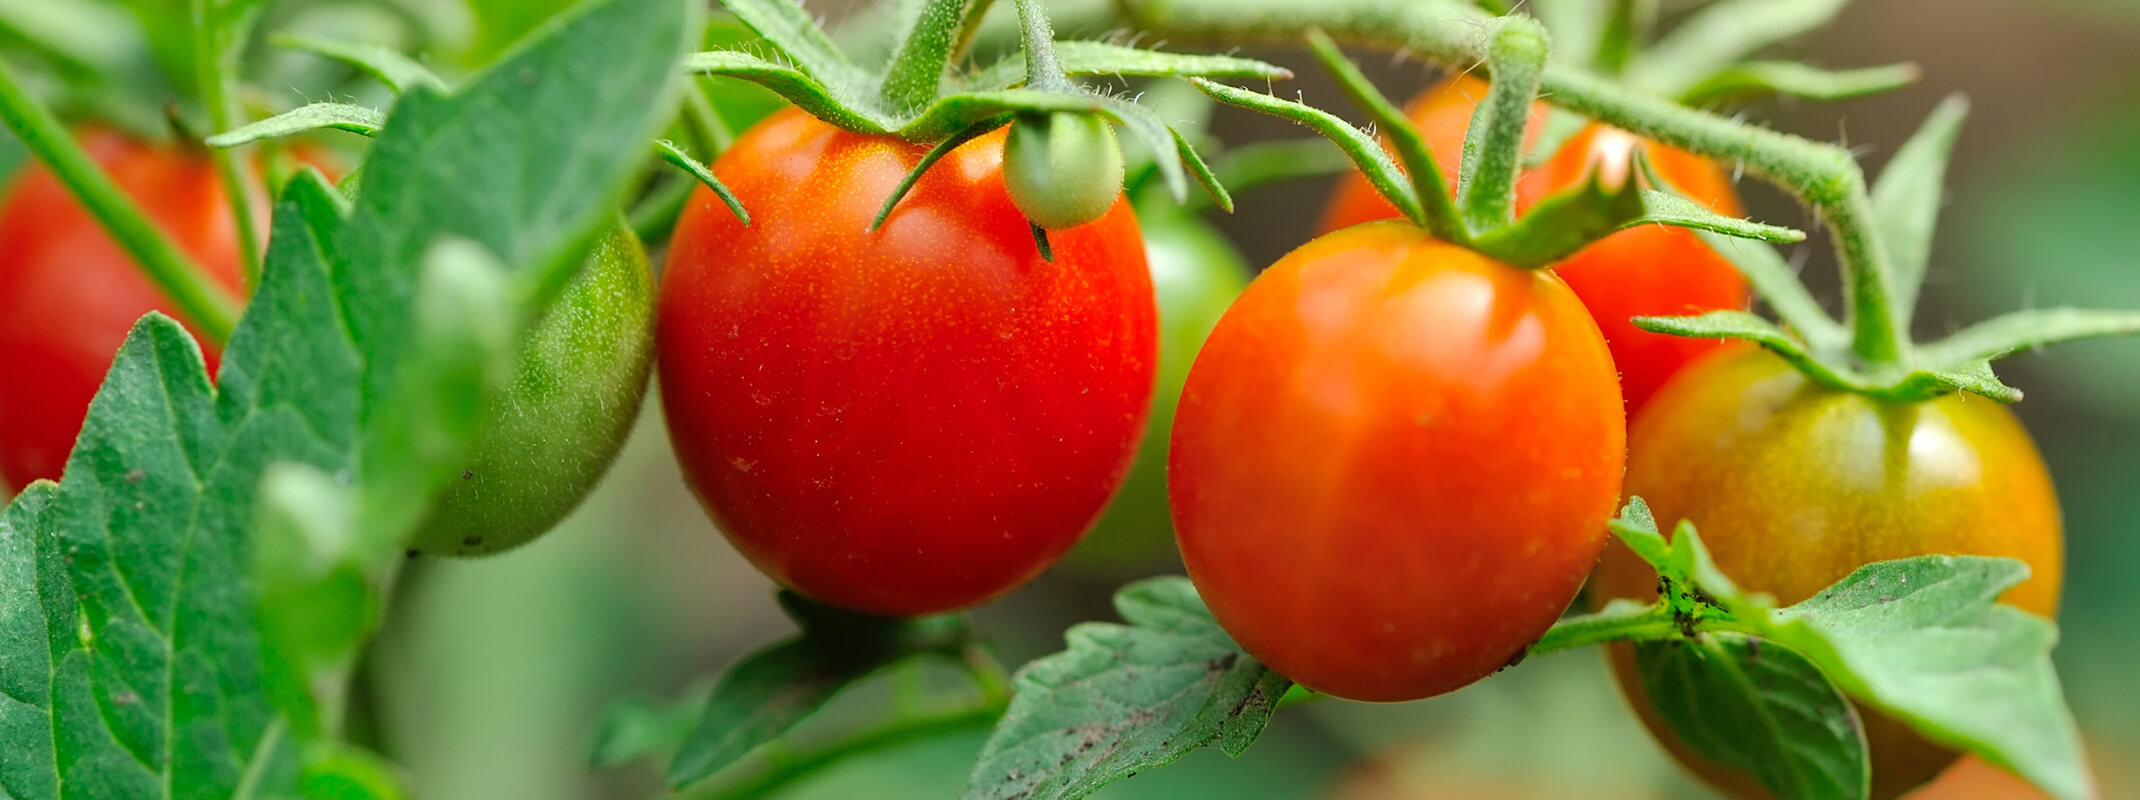 Tomatoes on the vine - hybrid varieties